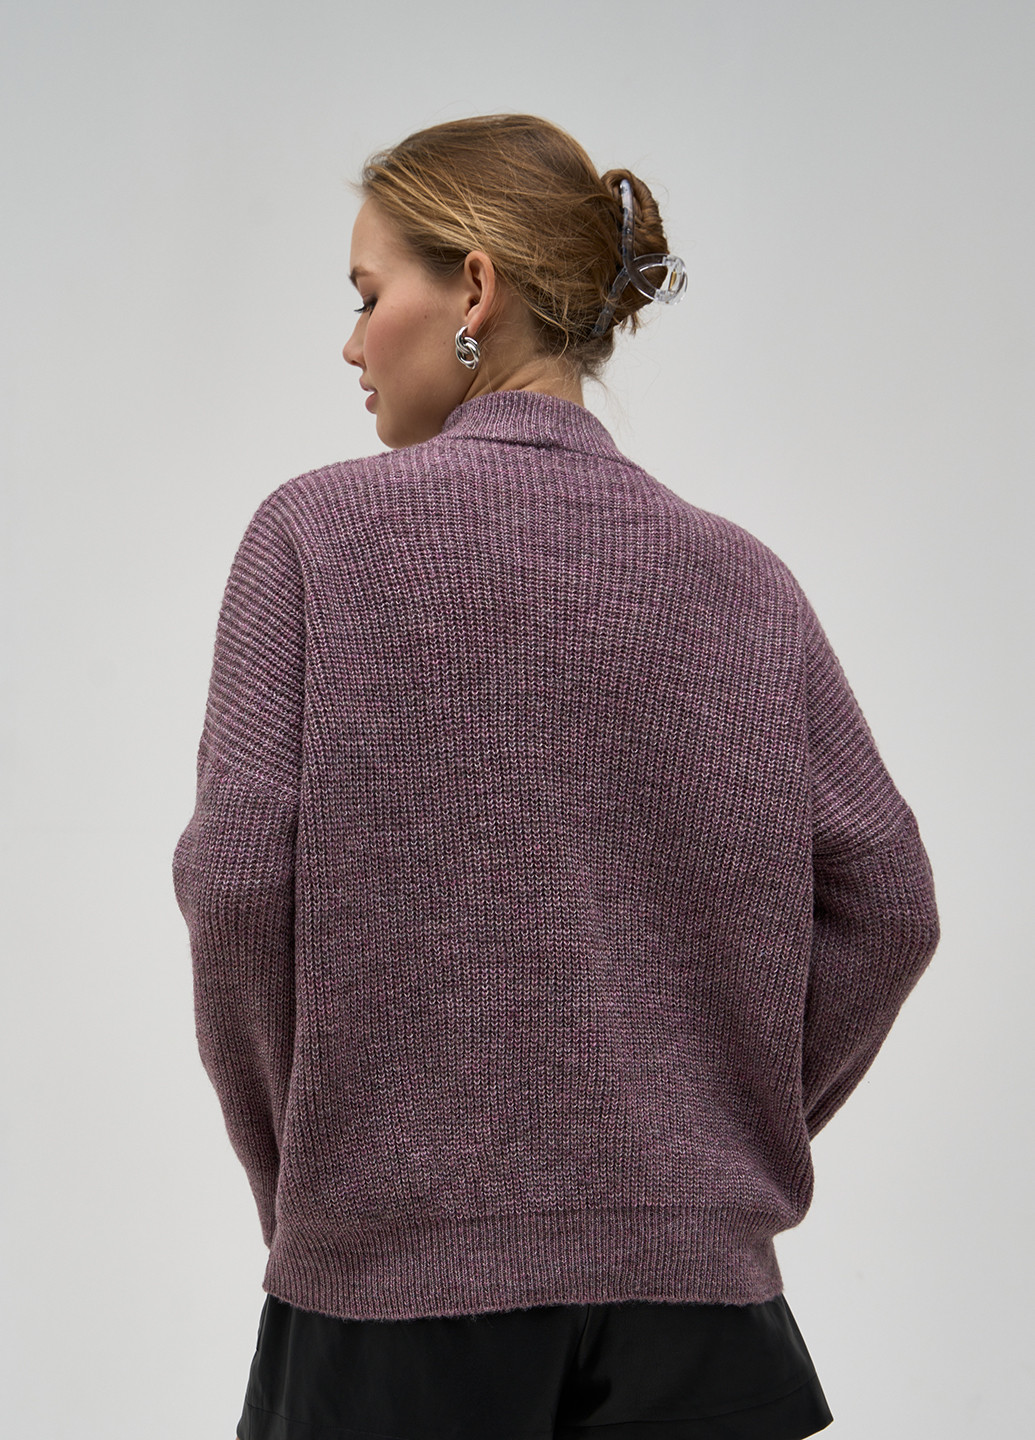 Сливовый демисезонный свитер Sewel